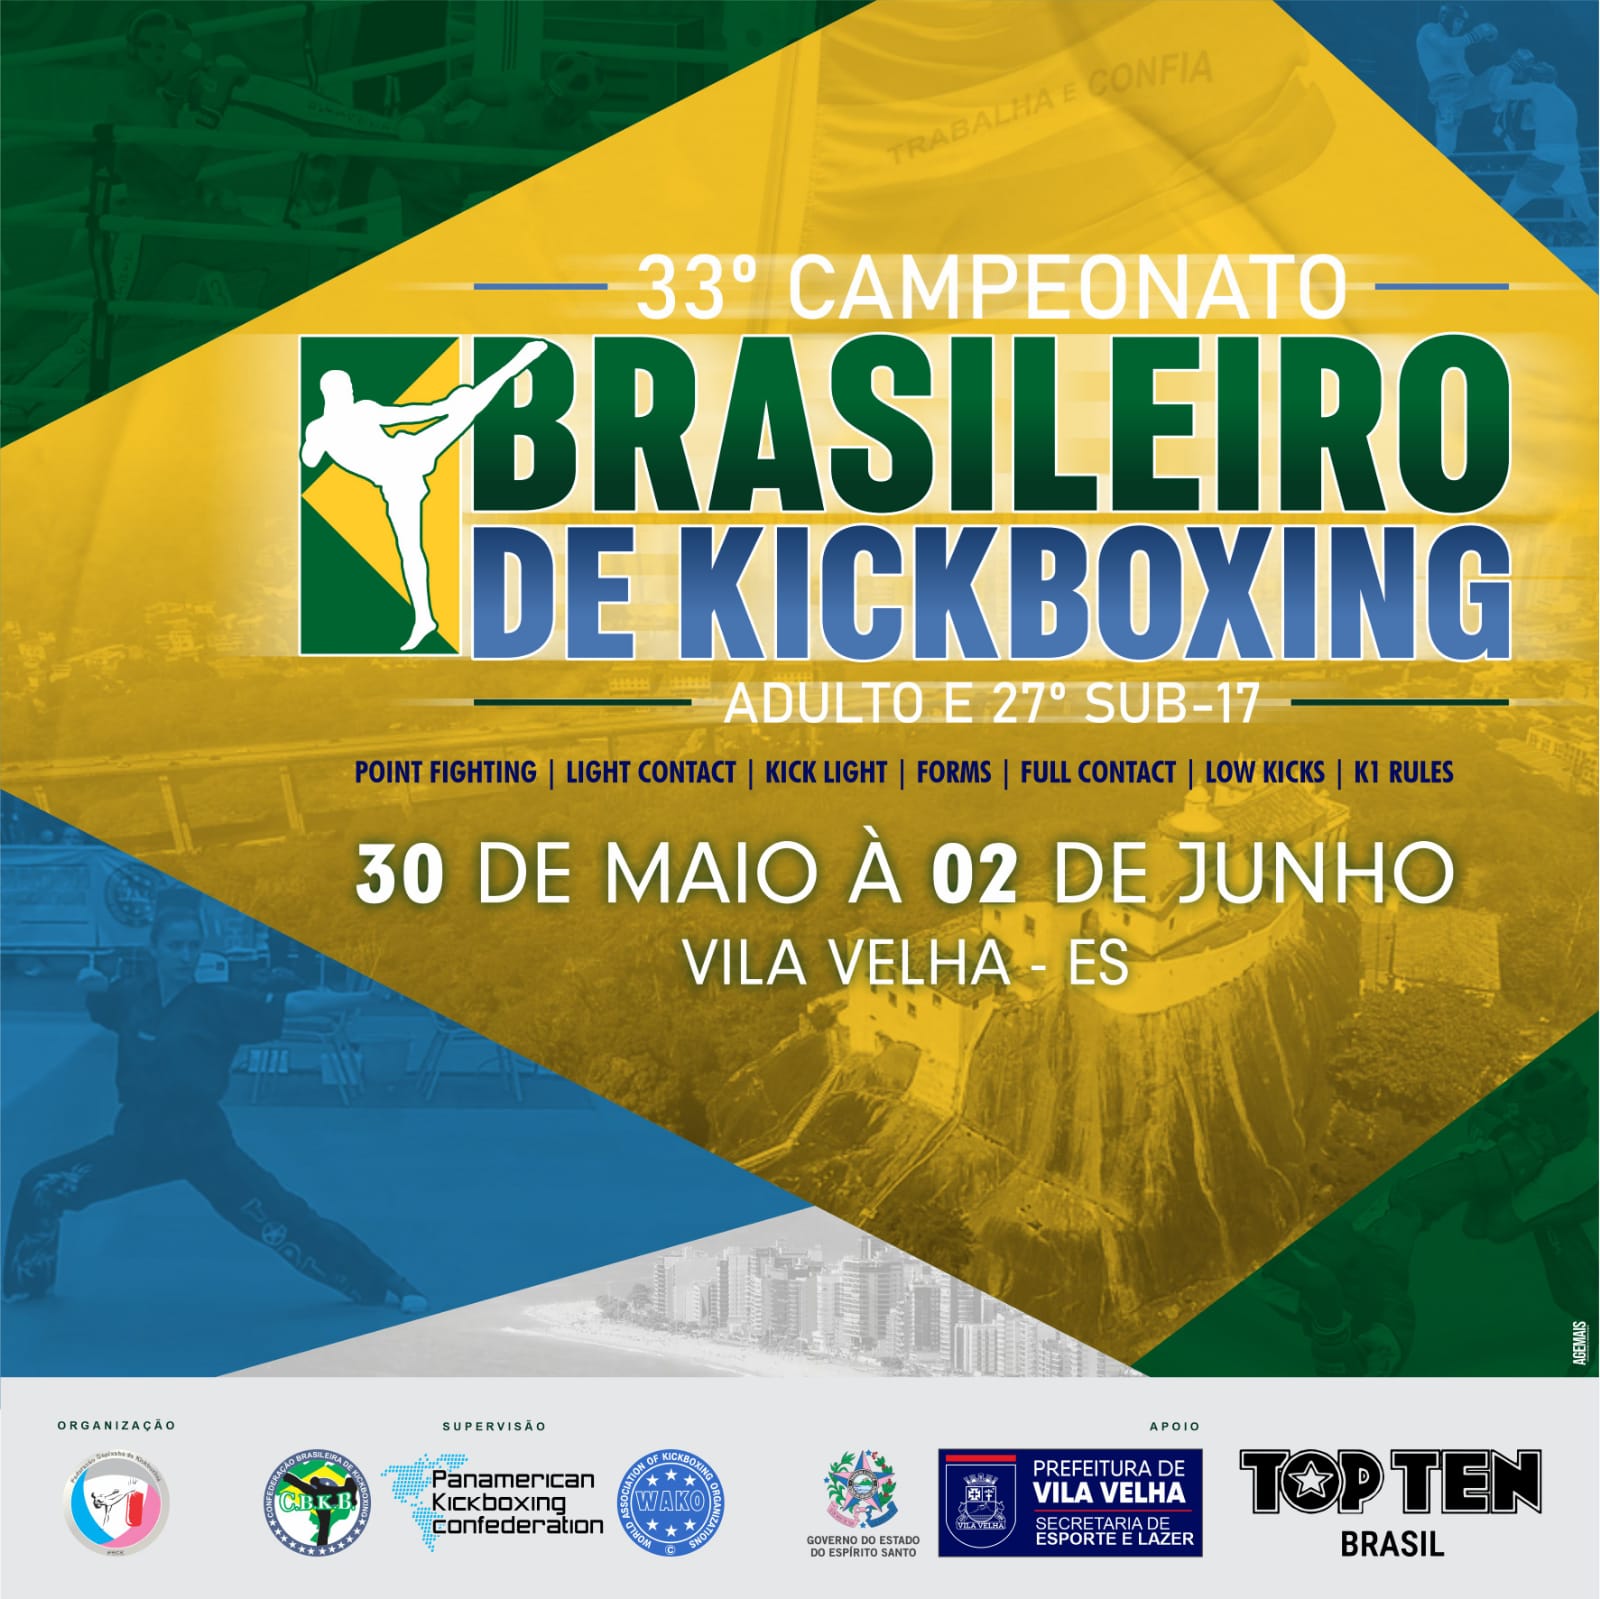 33° Campeonato Brasileiro de Kickboxing Adulto e 27° Campeonato Brasileiro de Kickboxing Sub 17